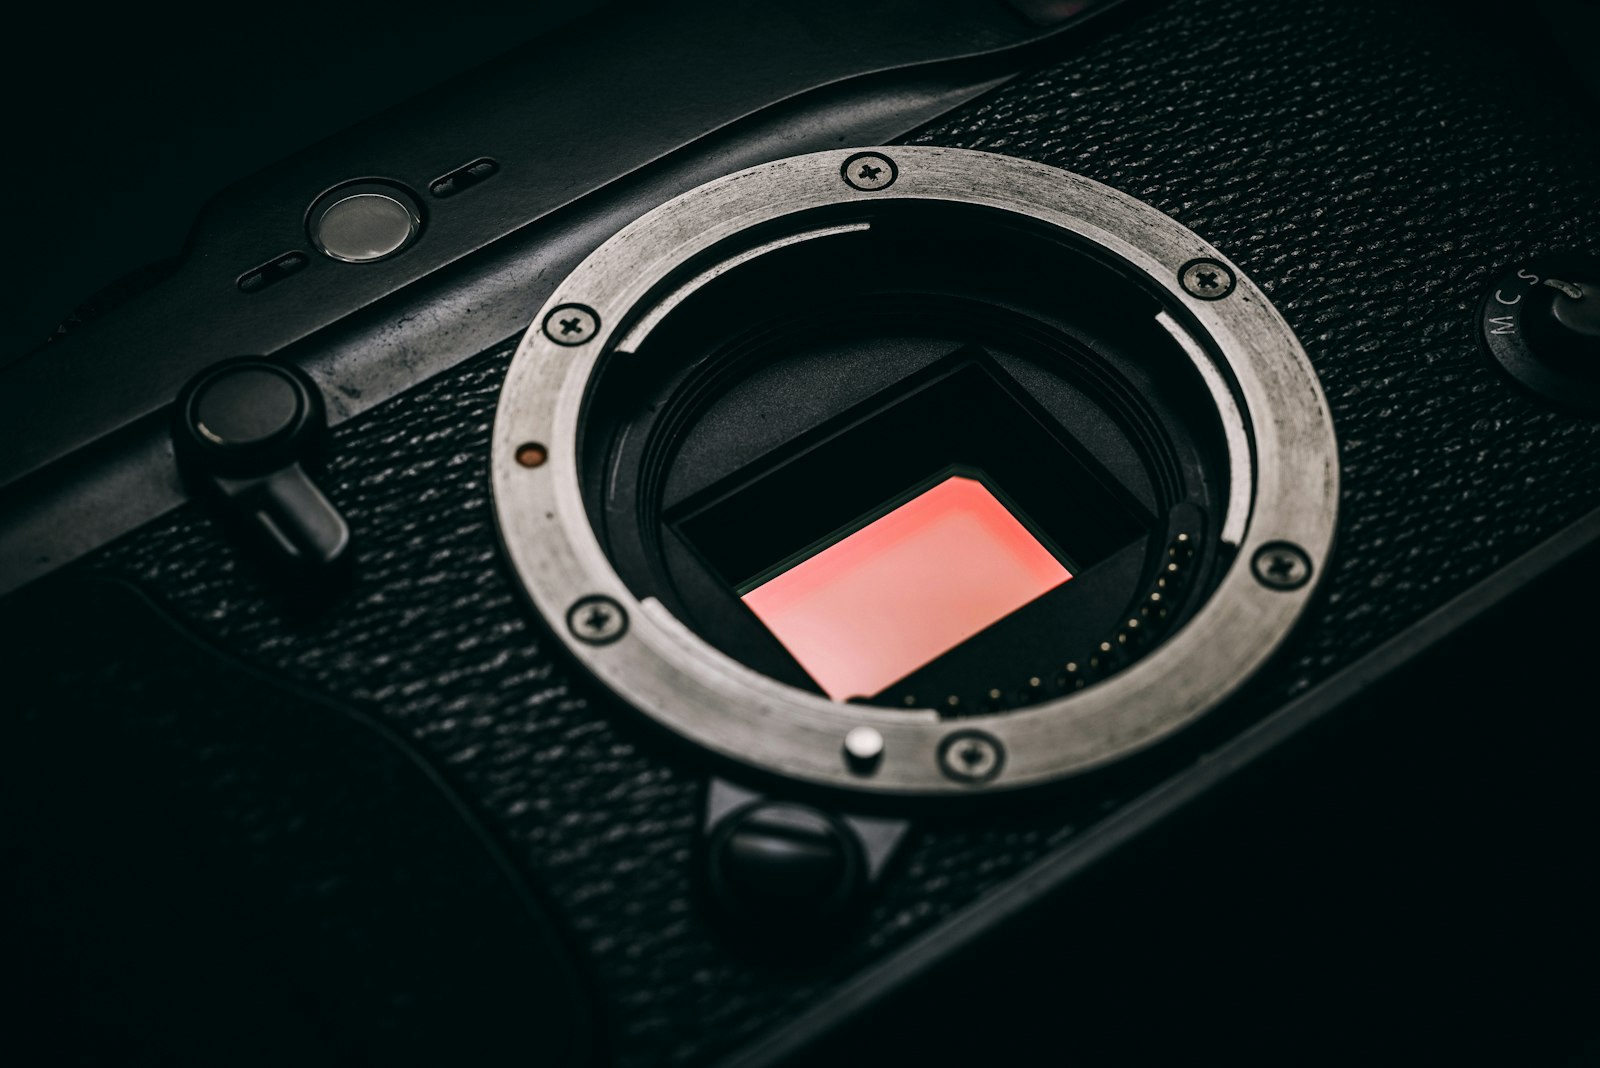 Nikon AF Nikkor 50mm F1.8D sample photo. Close-up photo of black photography